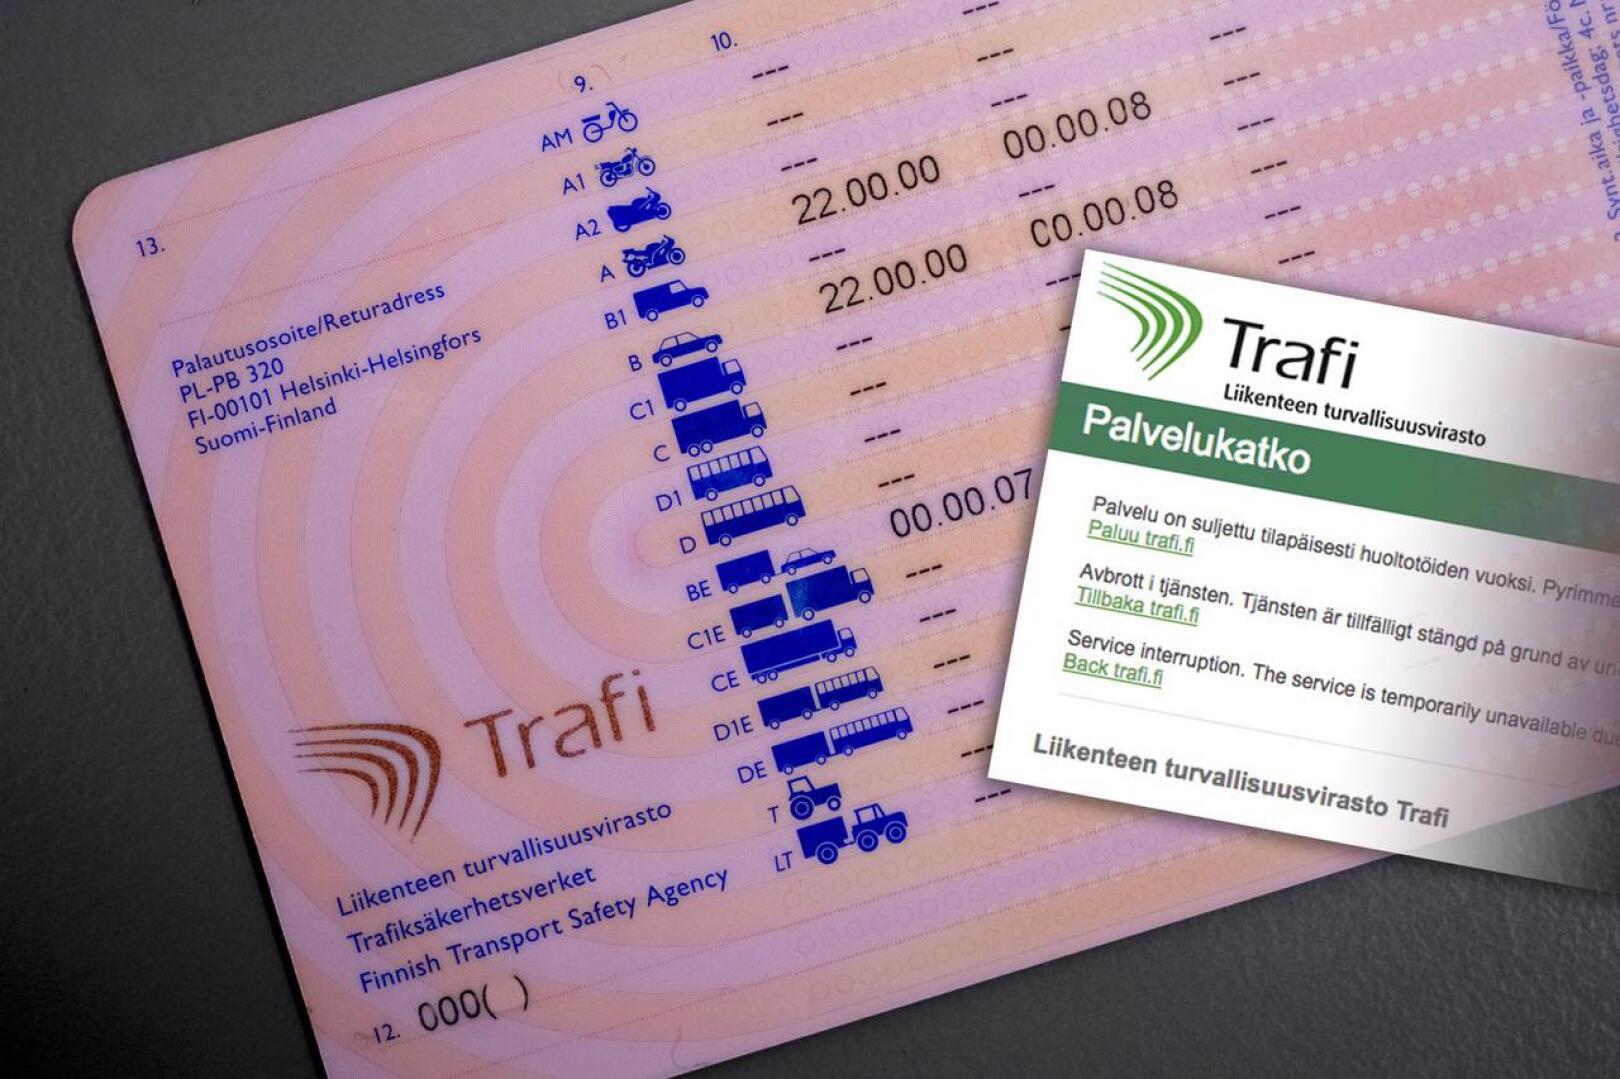 Liikenteen turvallisuusvirasto Trafin päätös julkaista suomalaisten tiedot ajo-oikeudesta netissä sai aikaan kohun. Kohun seurauksena Trafi sulki palvelun.